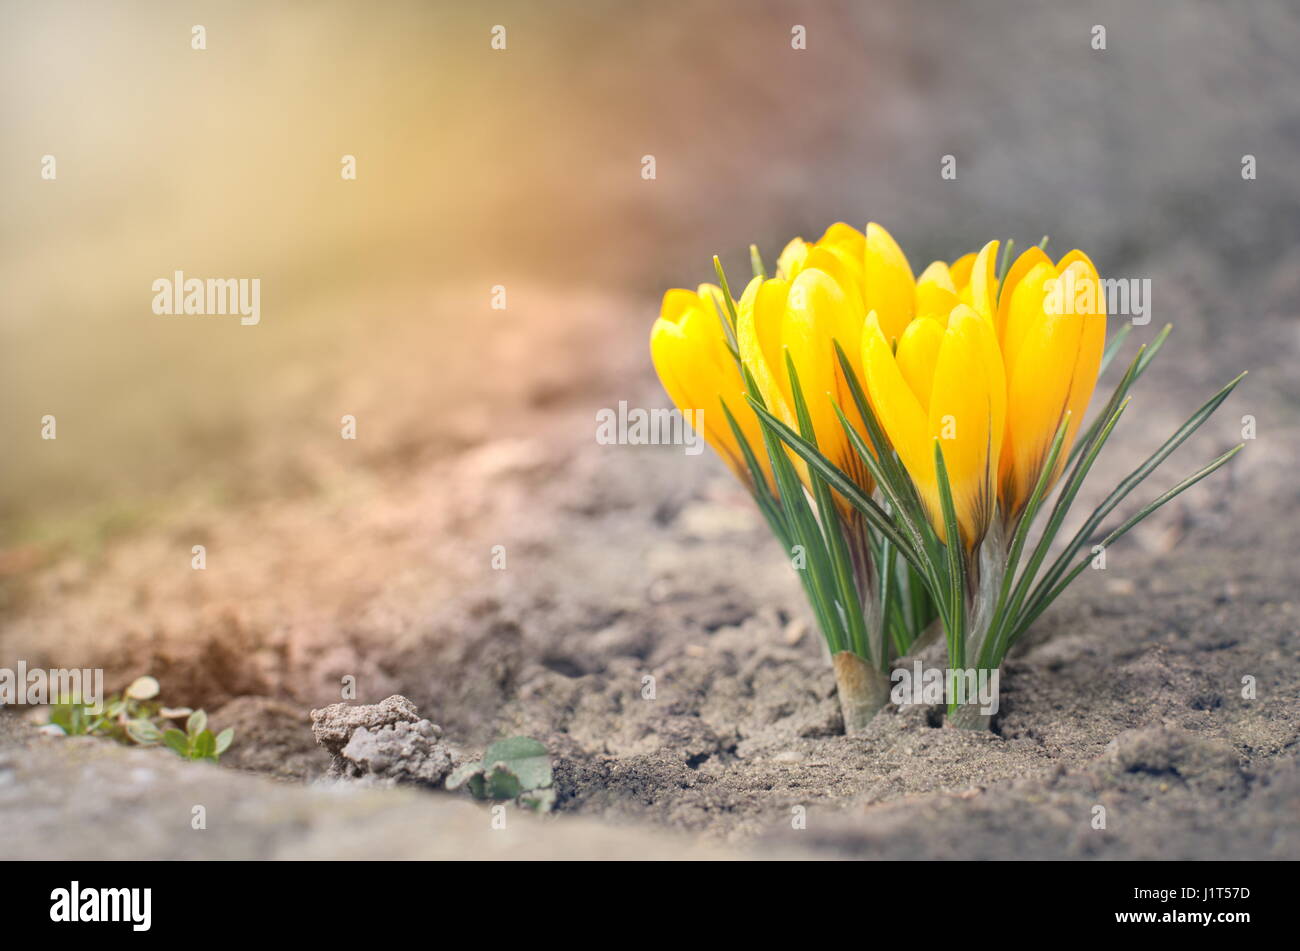 Fleurs crocus jaune soleil Gros plan au niveau du sol Banque D'Images